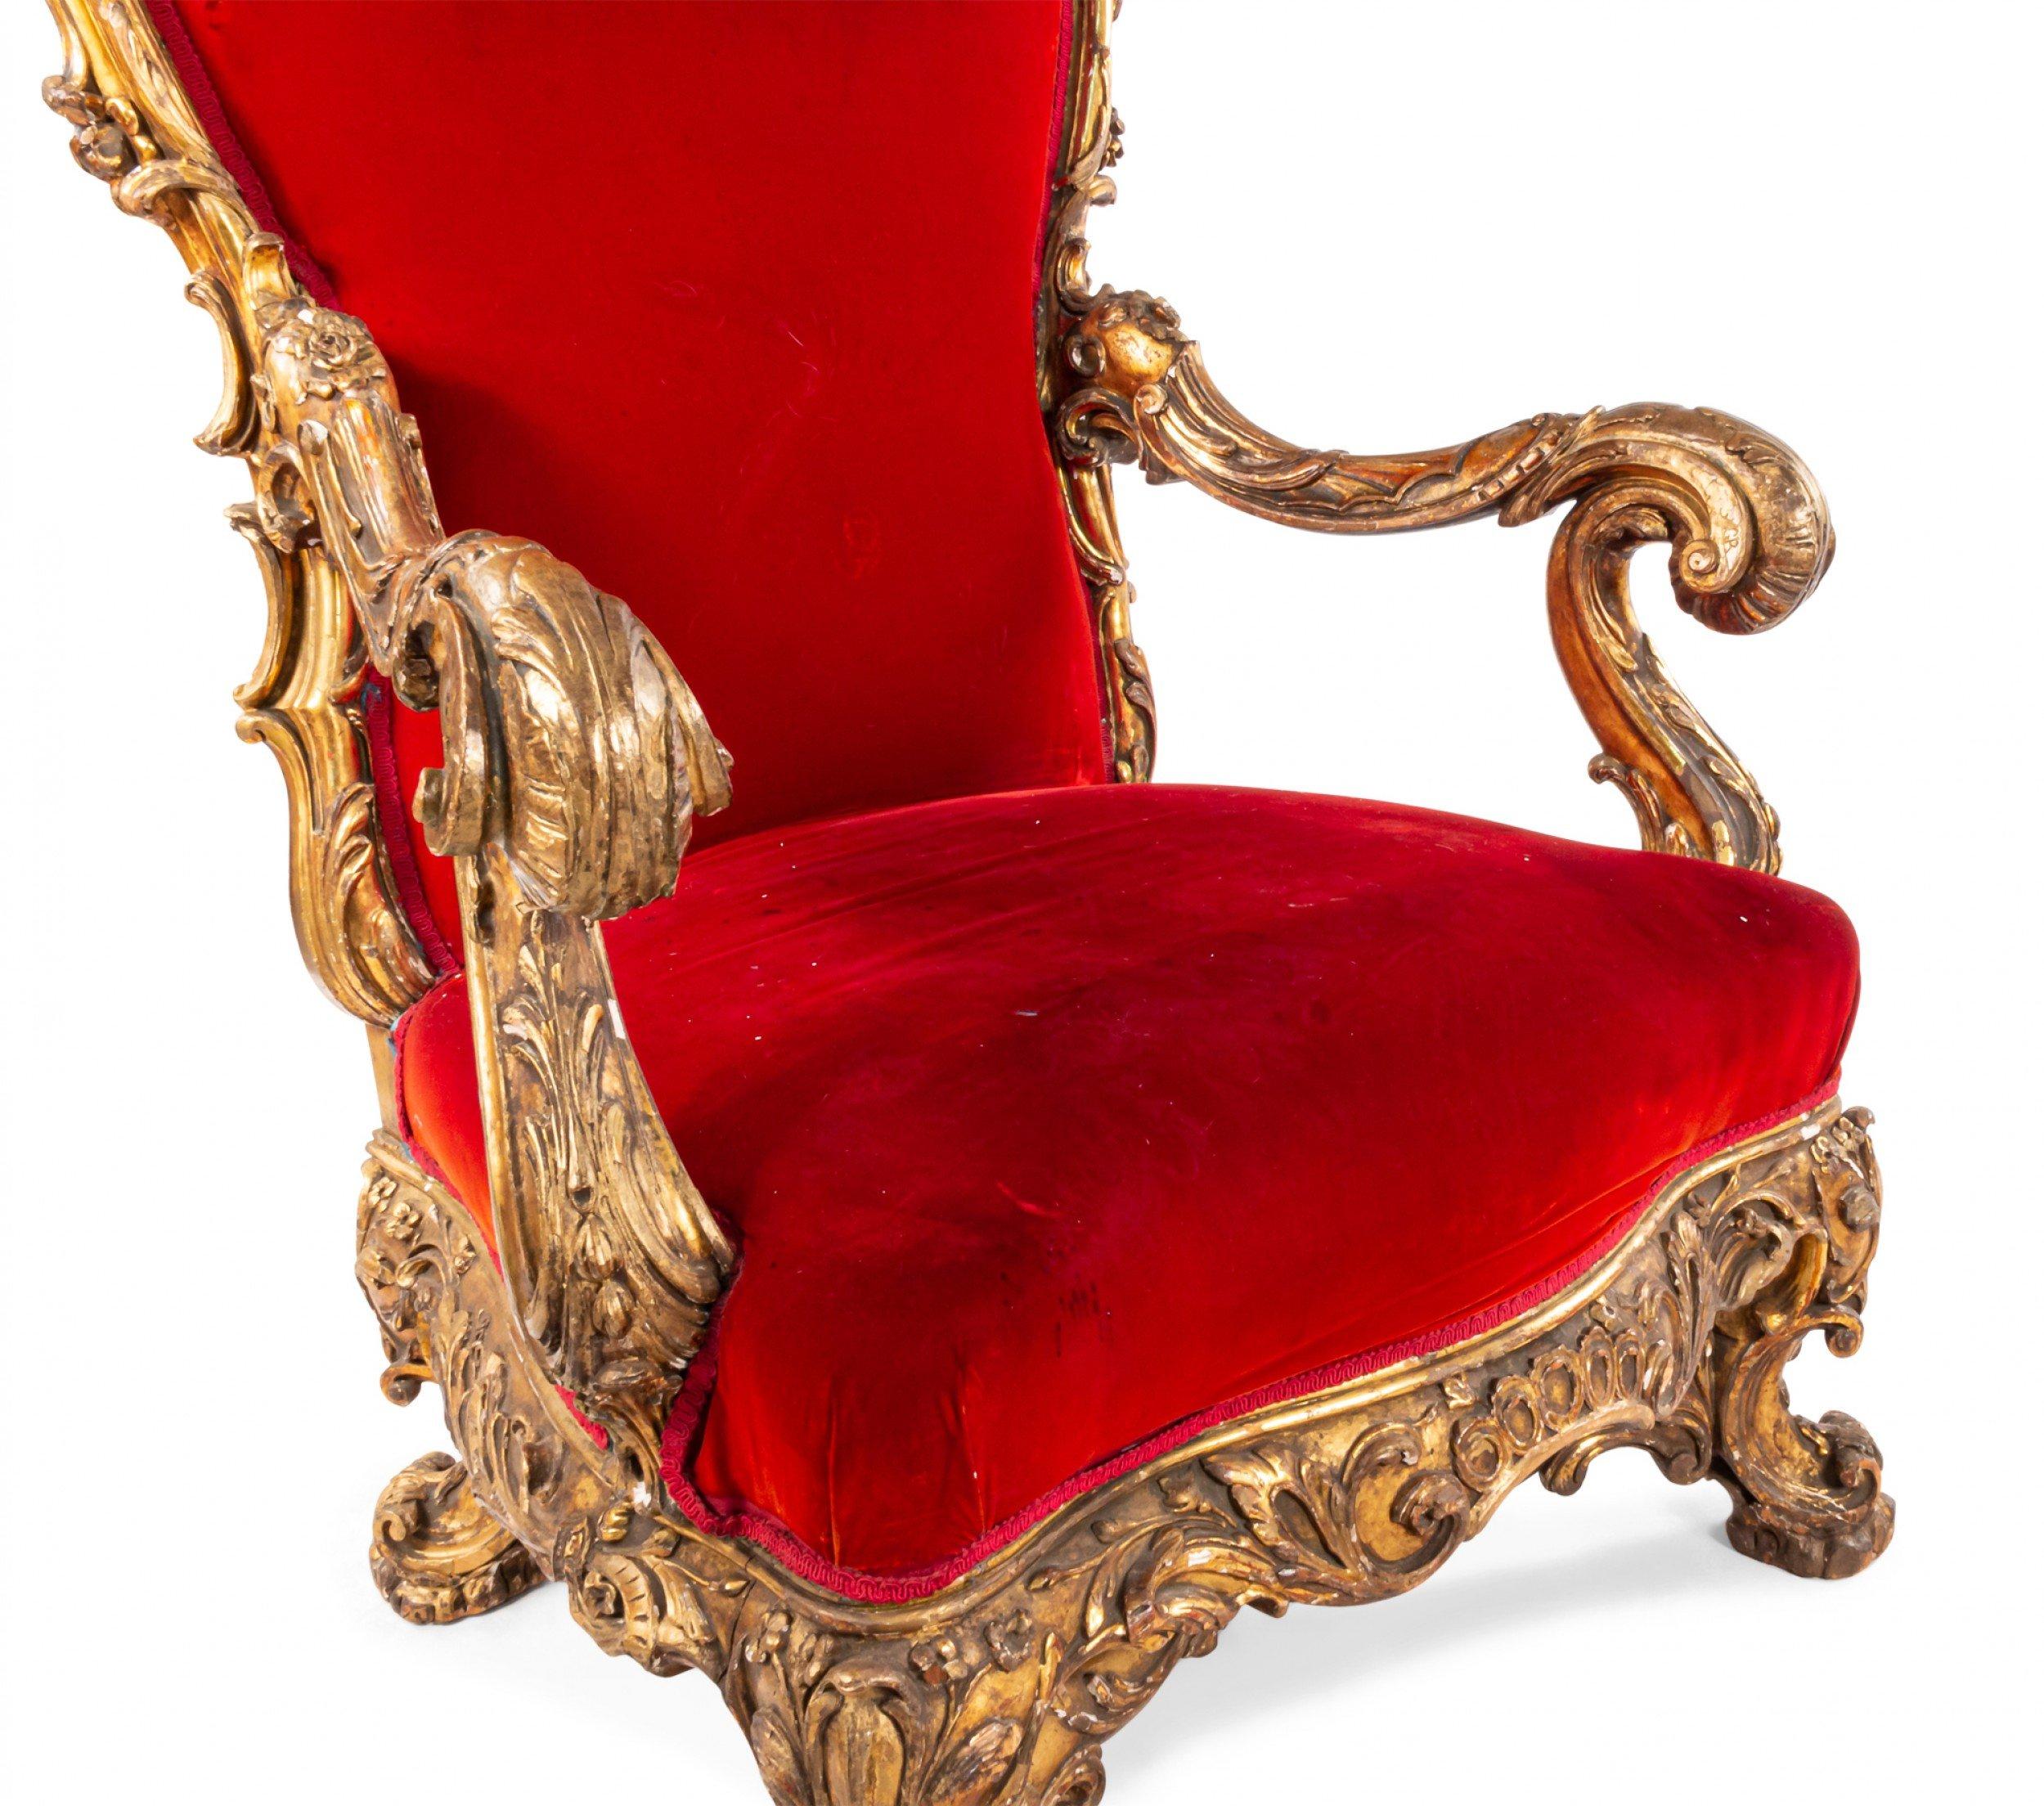 Chaise trône de style Régence (19e siècle), dorée, avec crête de dossier et civière sculptées, tapissée de velours rouge
